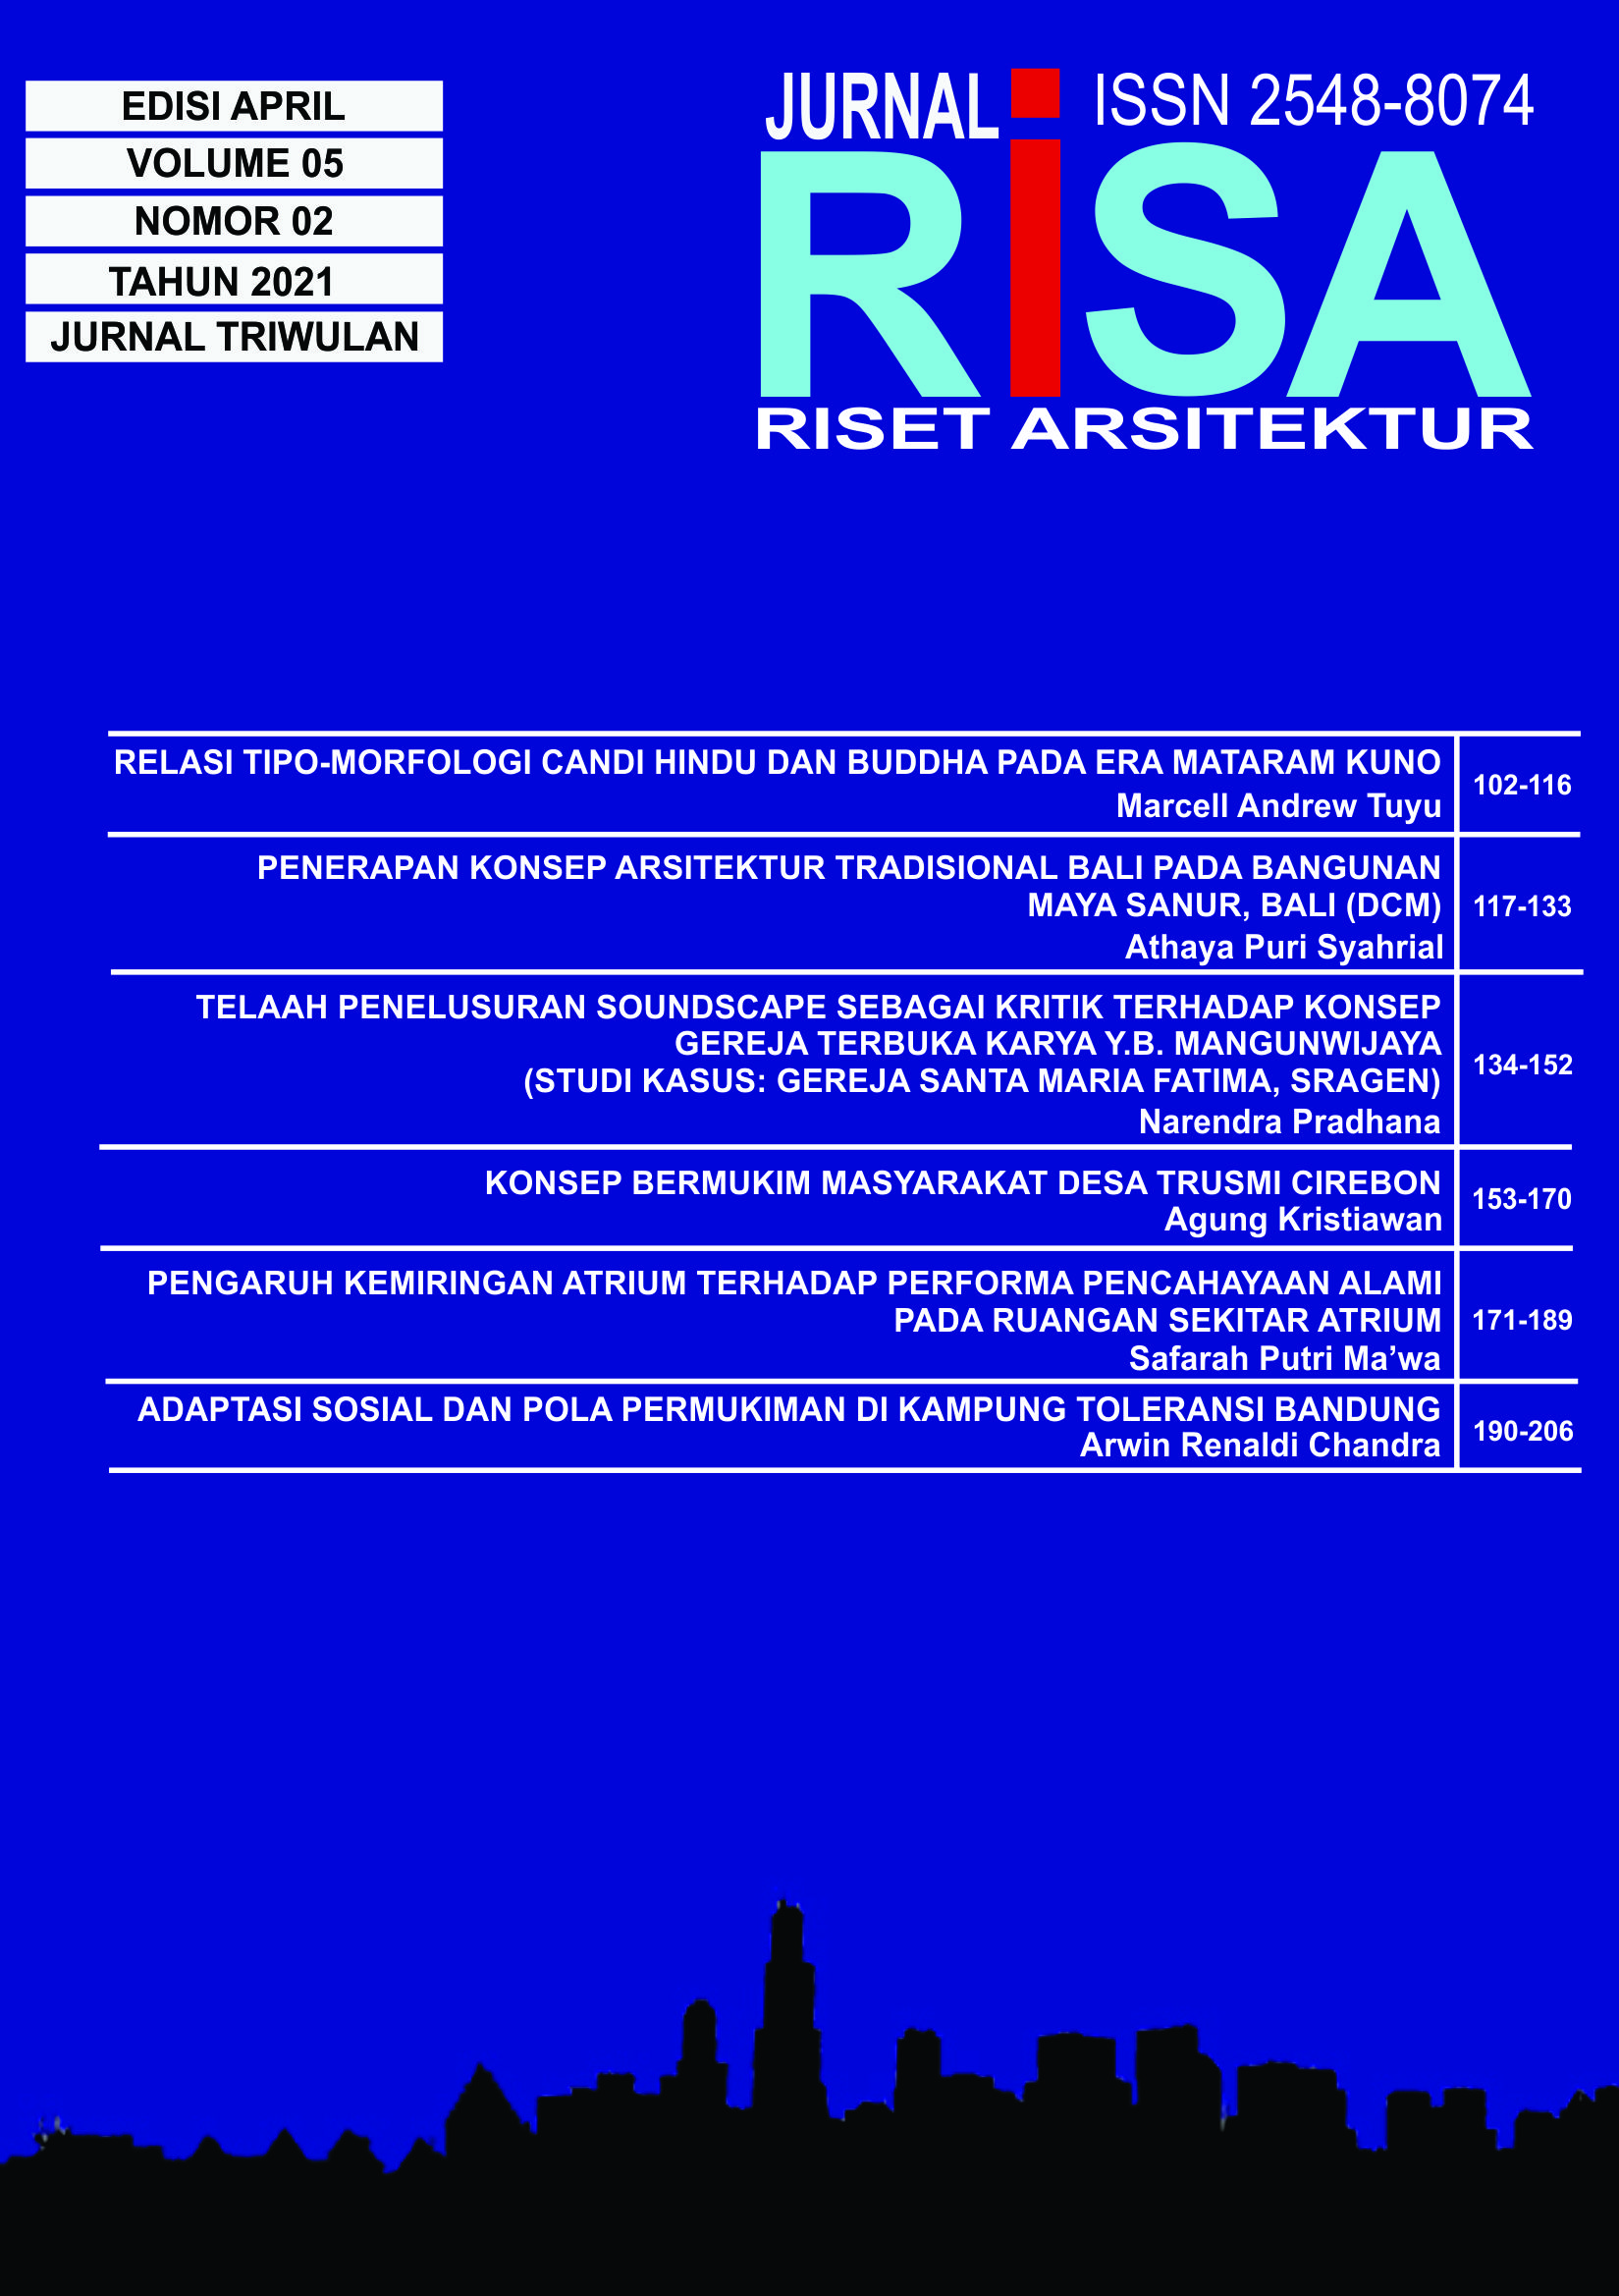 					Lihat Vol 5 No 02 (2021): RISET ARSITEKTUR "RISA"
				